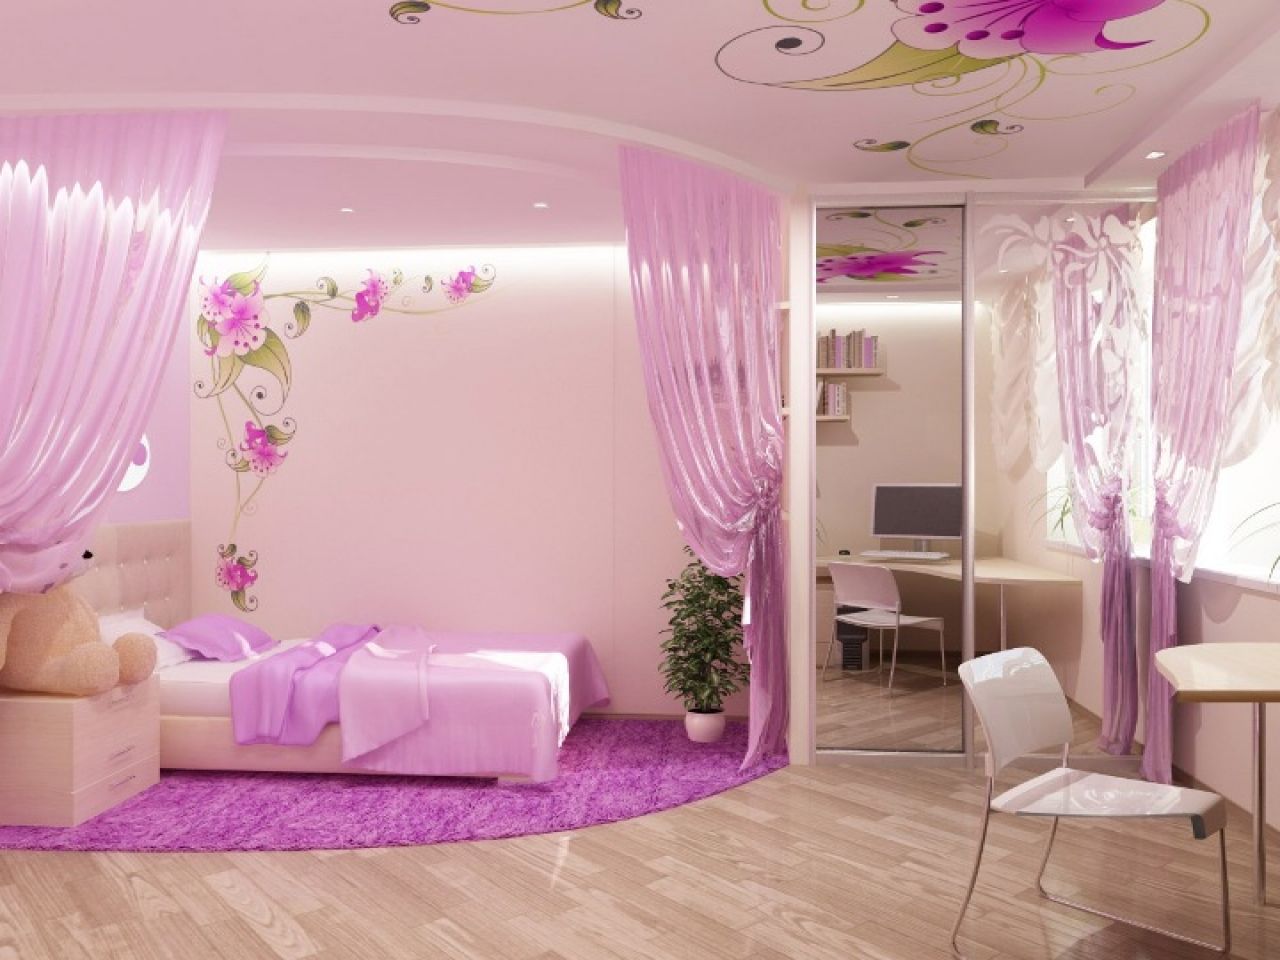 Thiết kế phòng ngủ màu tím pastel pha hồng lãng mạn